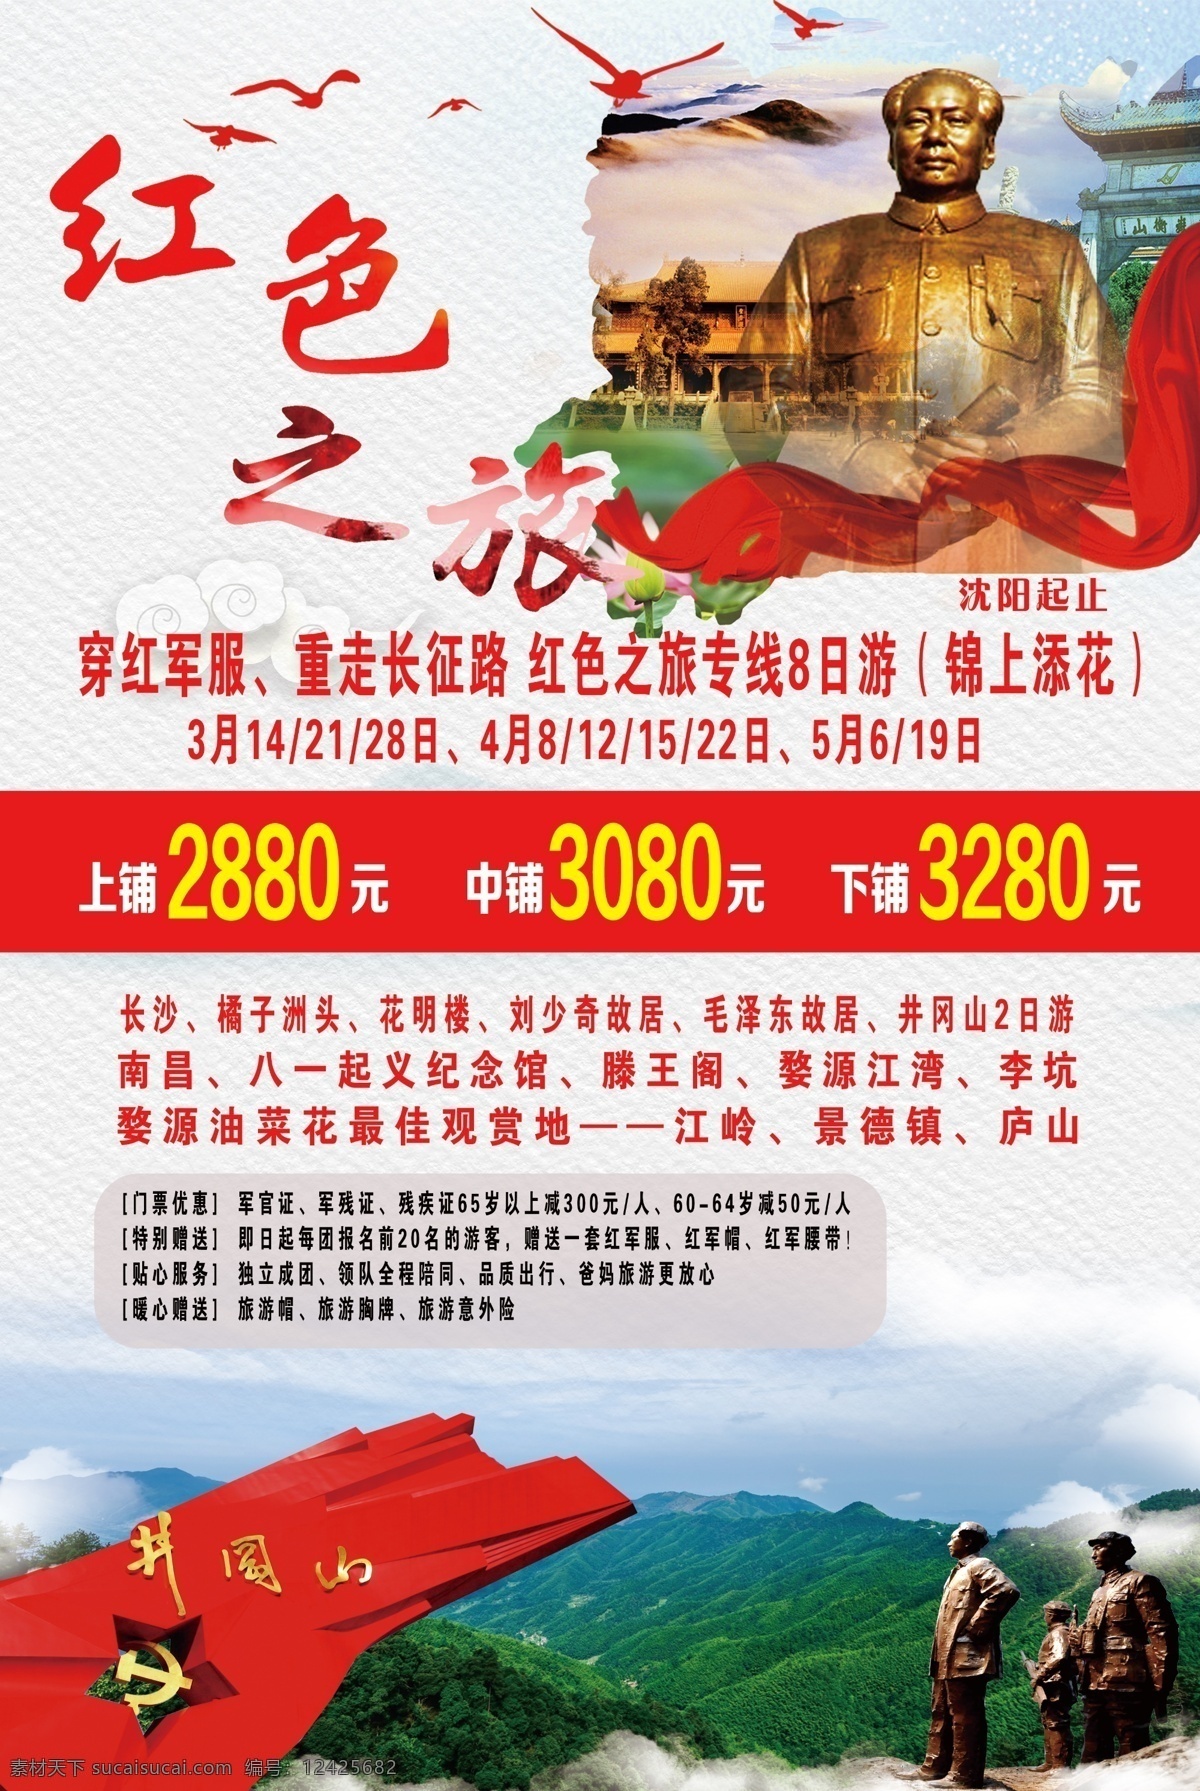 红色之旅海报 红色之旅 湖南旅游海报 分层素材 红色 旅游海报 分层